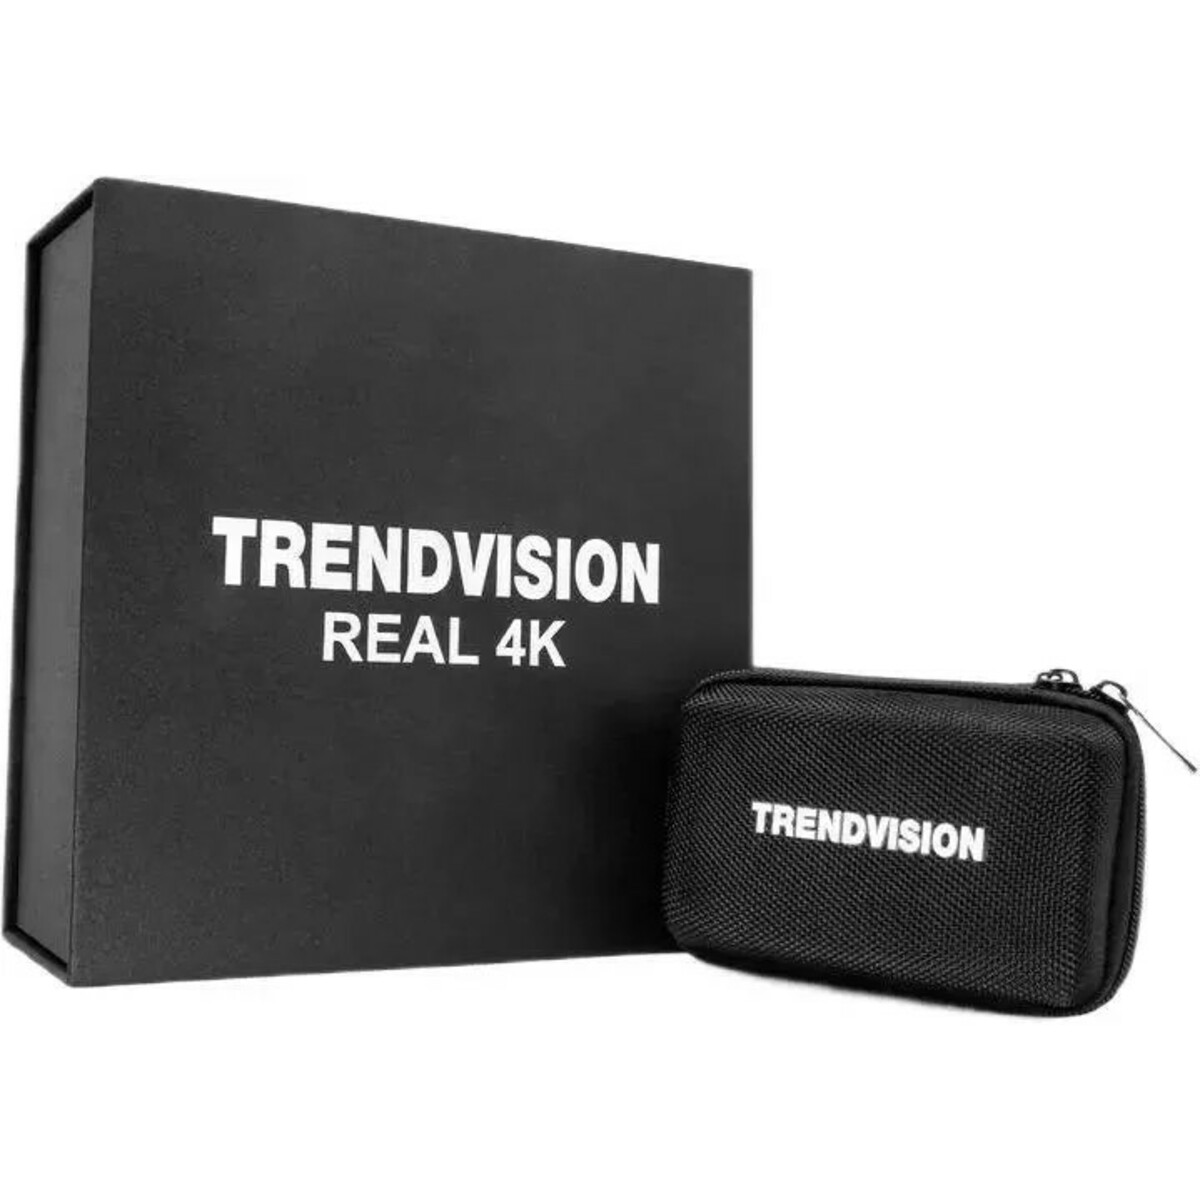 Видеорегистратор с радар-детектором TrendVision Hybrid Signature Real 4K, черный